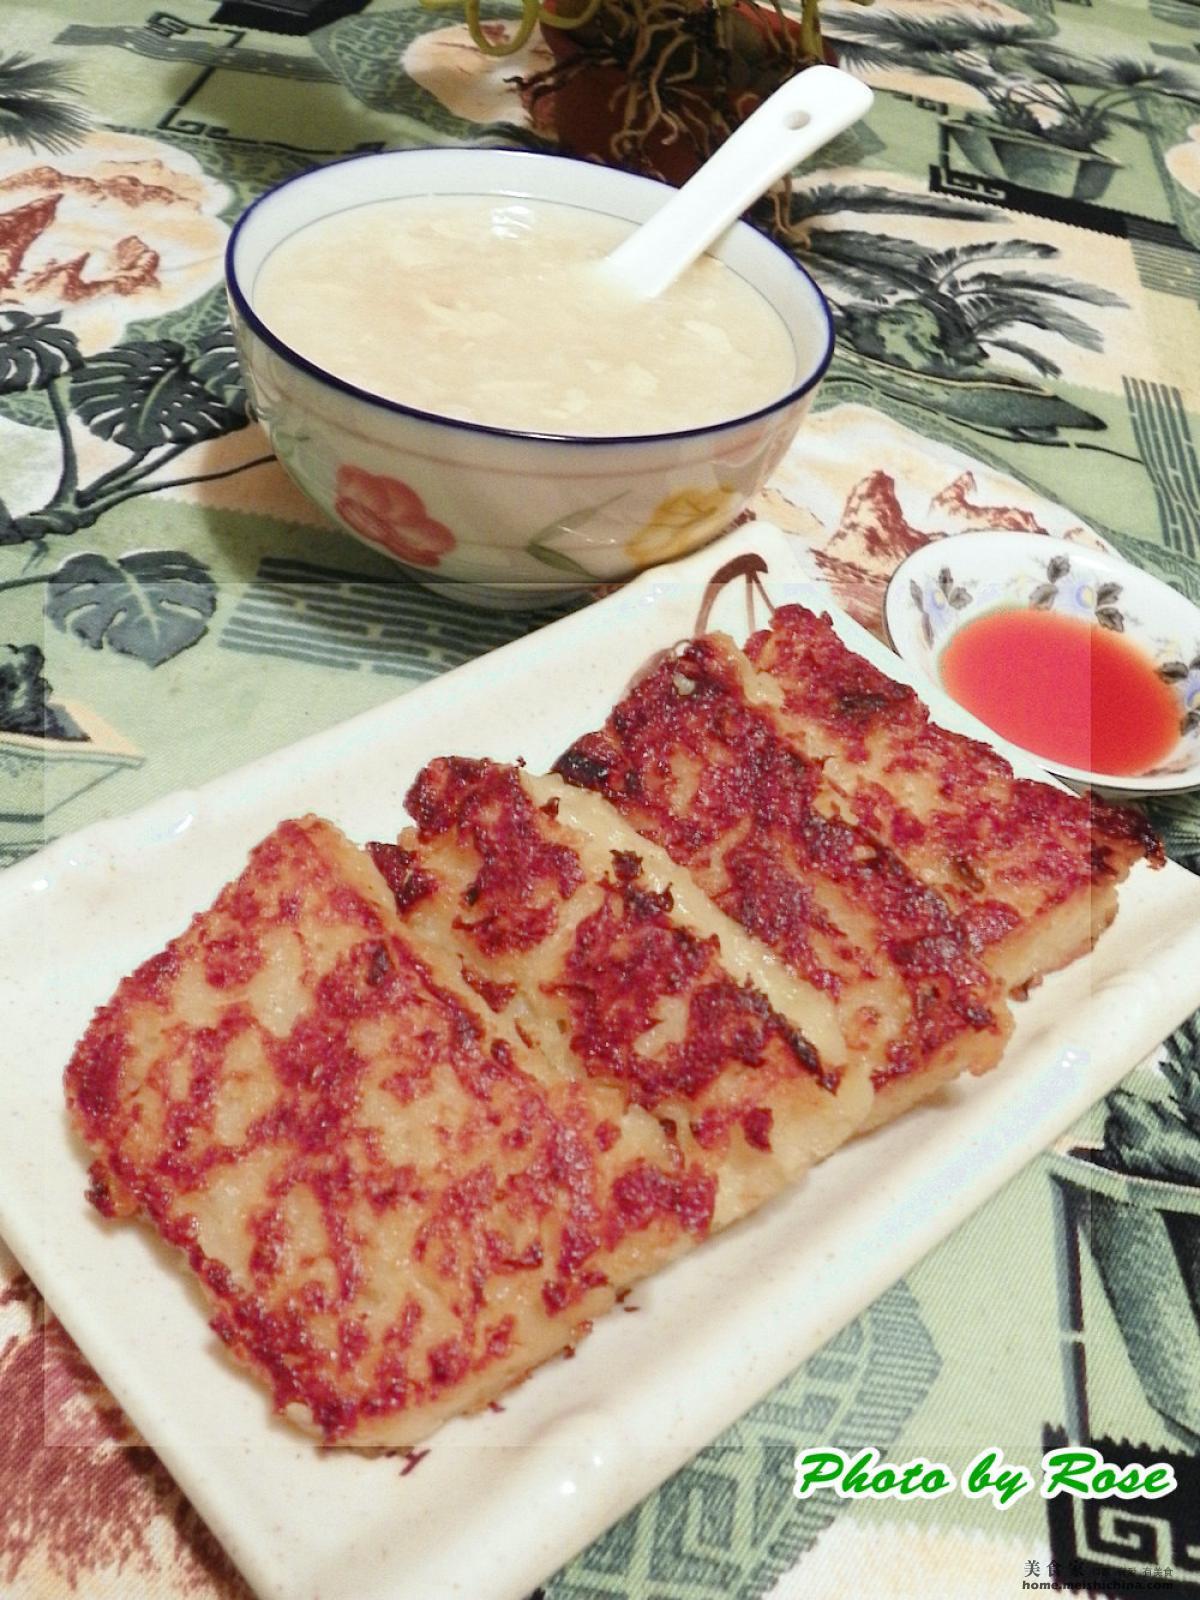 潮汕最传统的萝卜糕制作过程，爱吃萝卜糕的一定要收藏_哔哩哔哩 (゜-゜)つロ 干杯~-bilibili